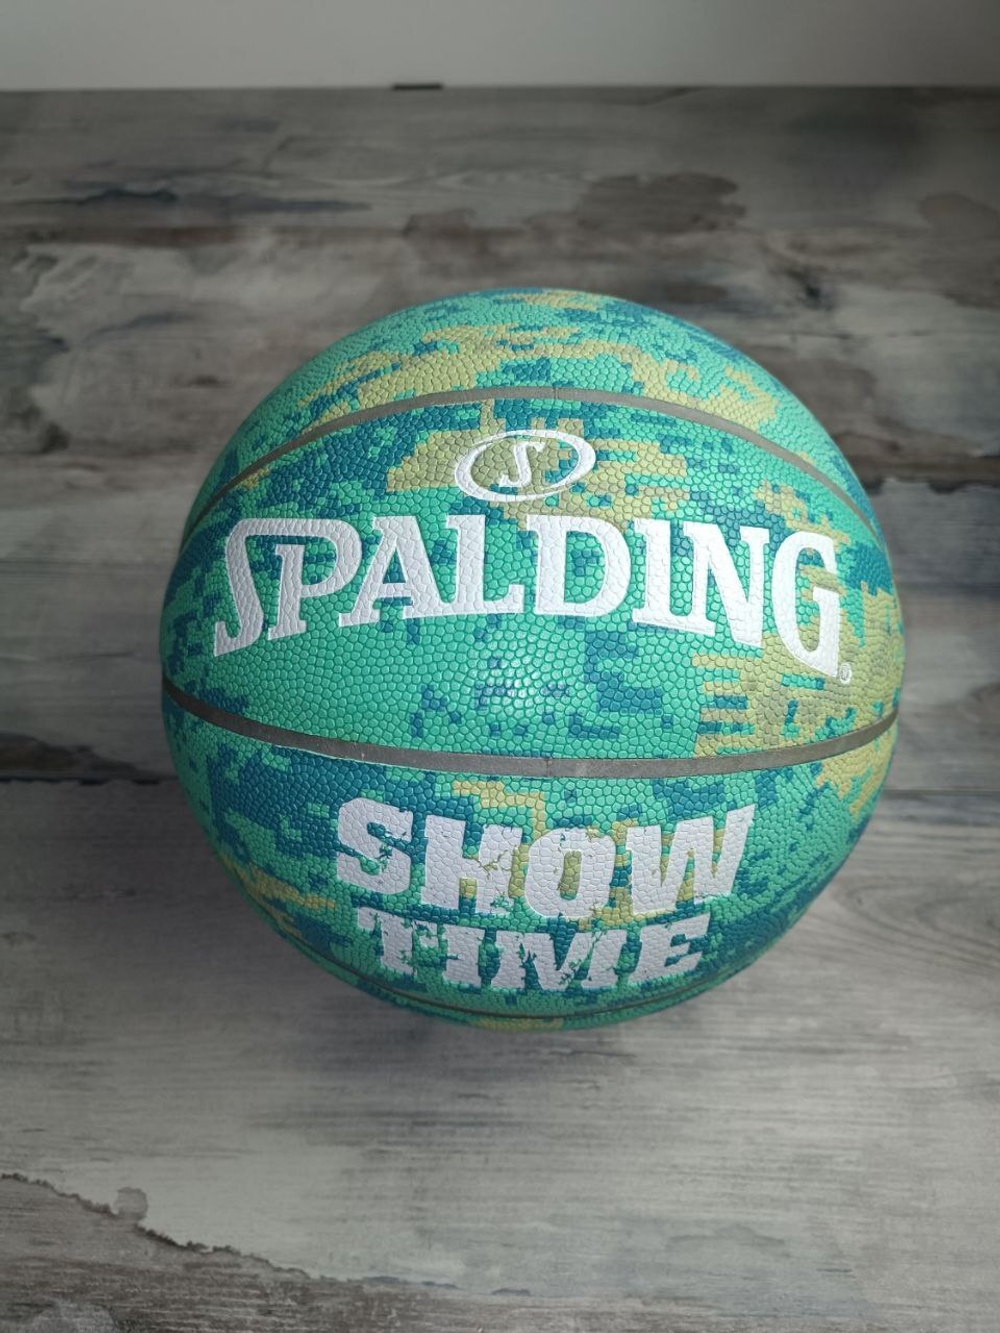 Купить баскетбольный мяч Spalding NBA в Москве